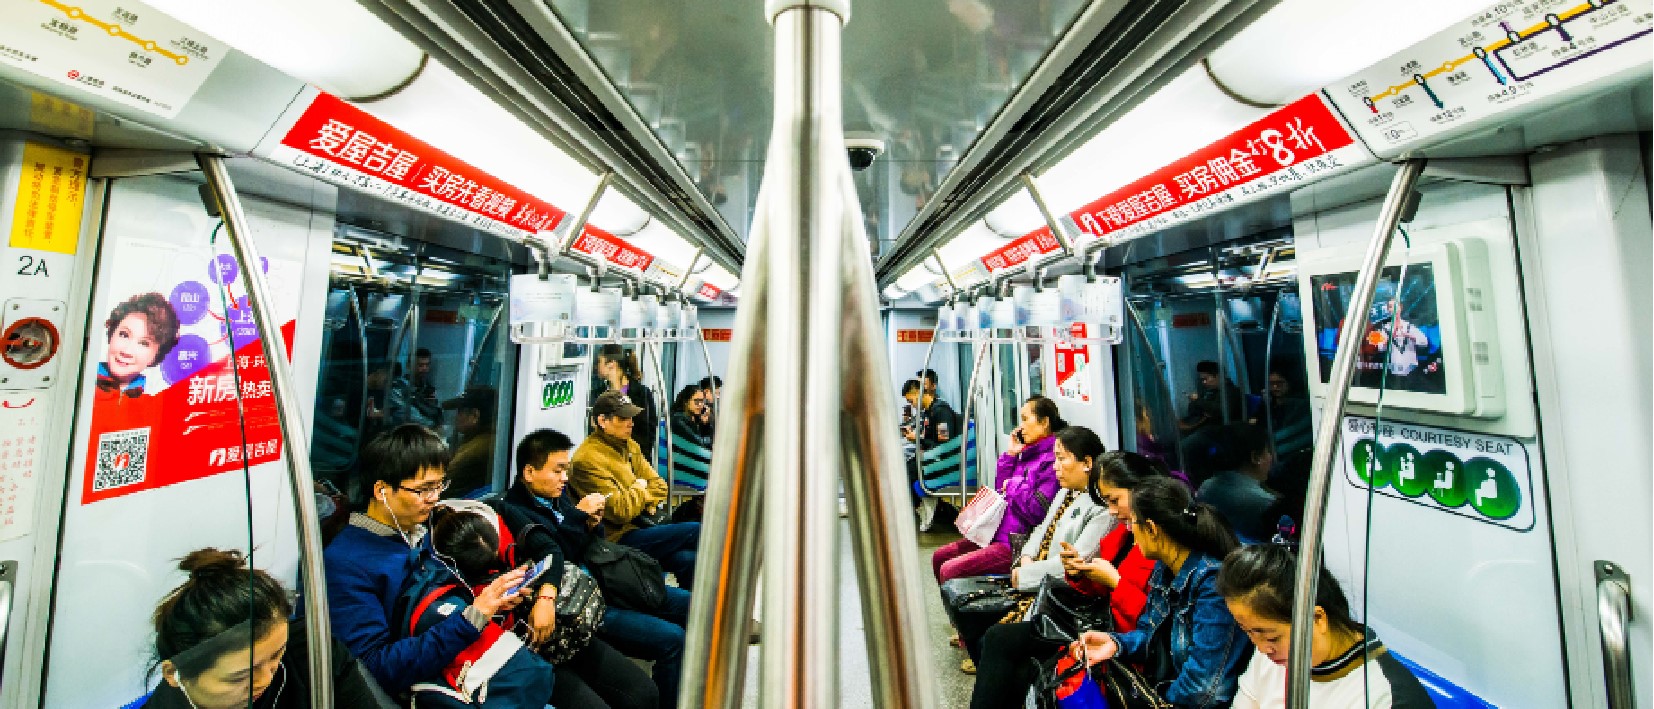 上海地铁3号线车厢广告 